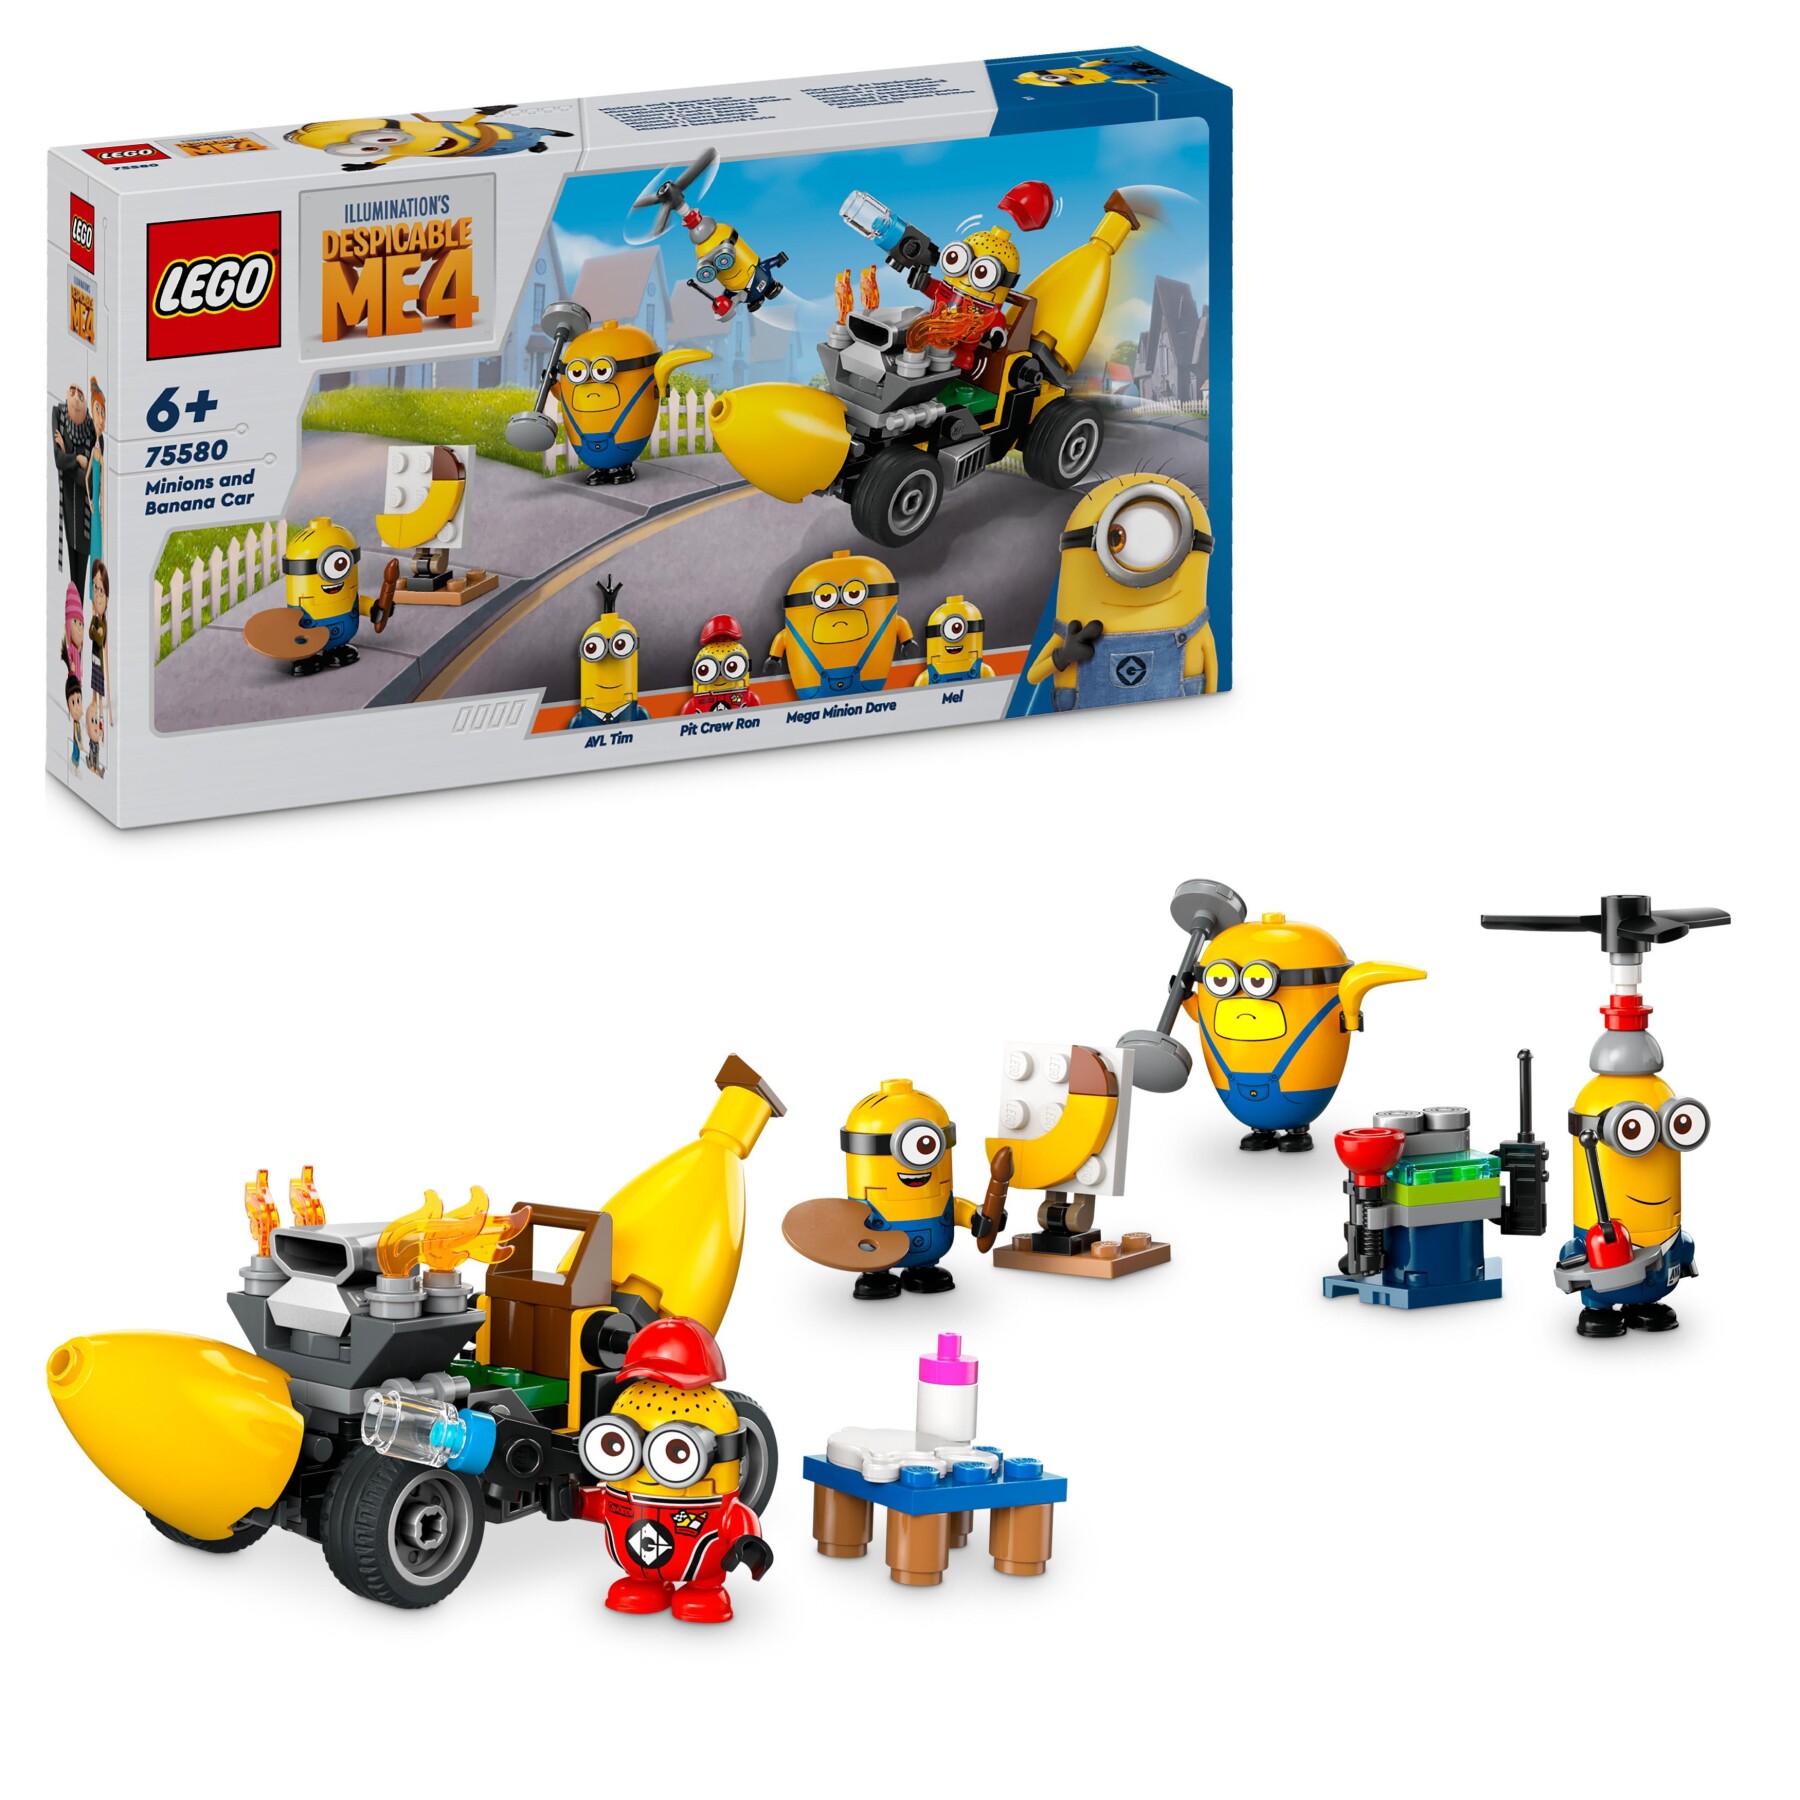 Lego cattivissimo me 75580 i minions e l’auto banana, macchina giocattolo da costruire, giochi per bambini 6+, idea regalo - MINIONS